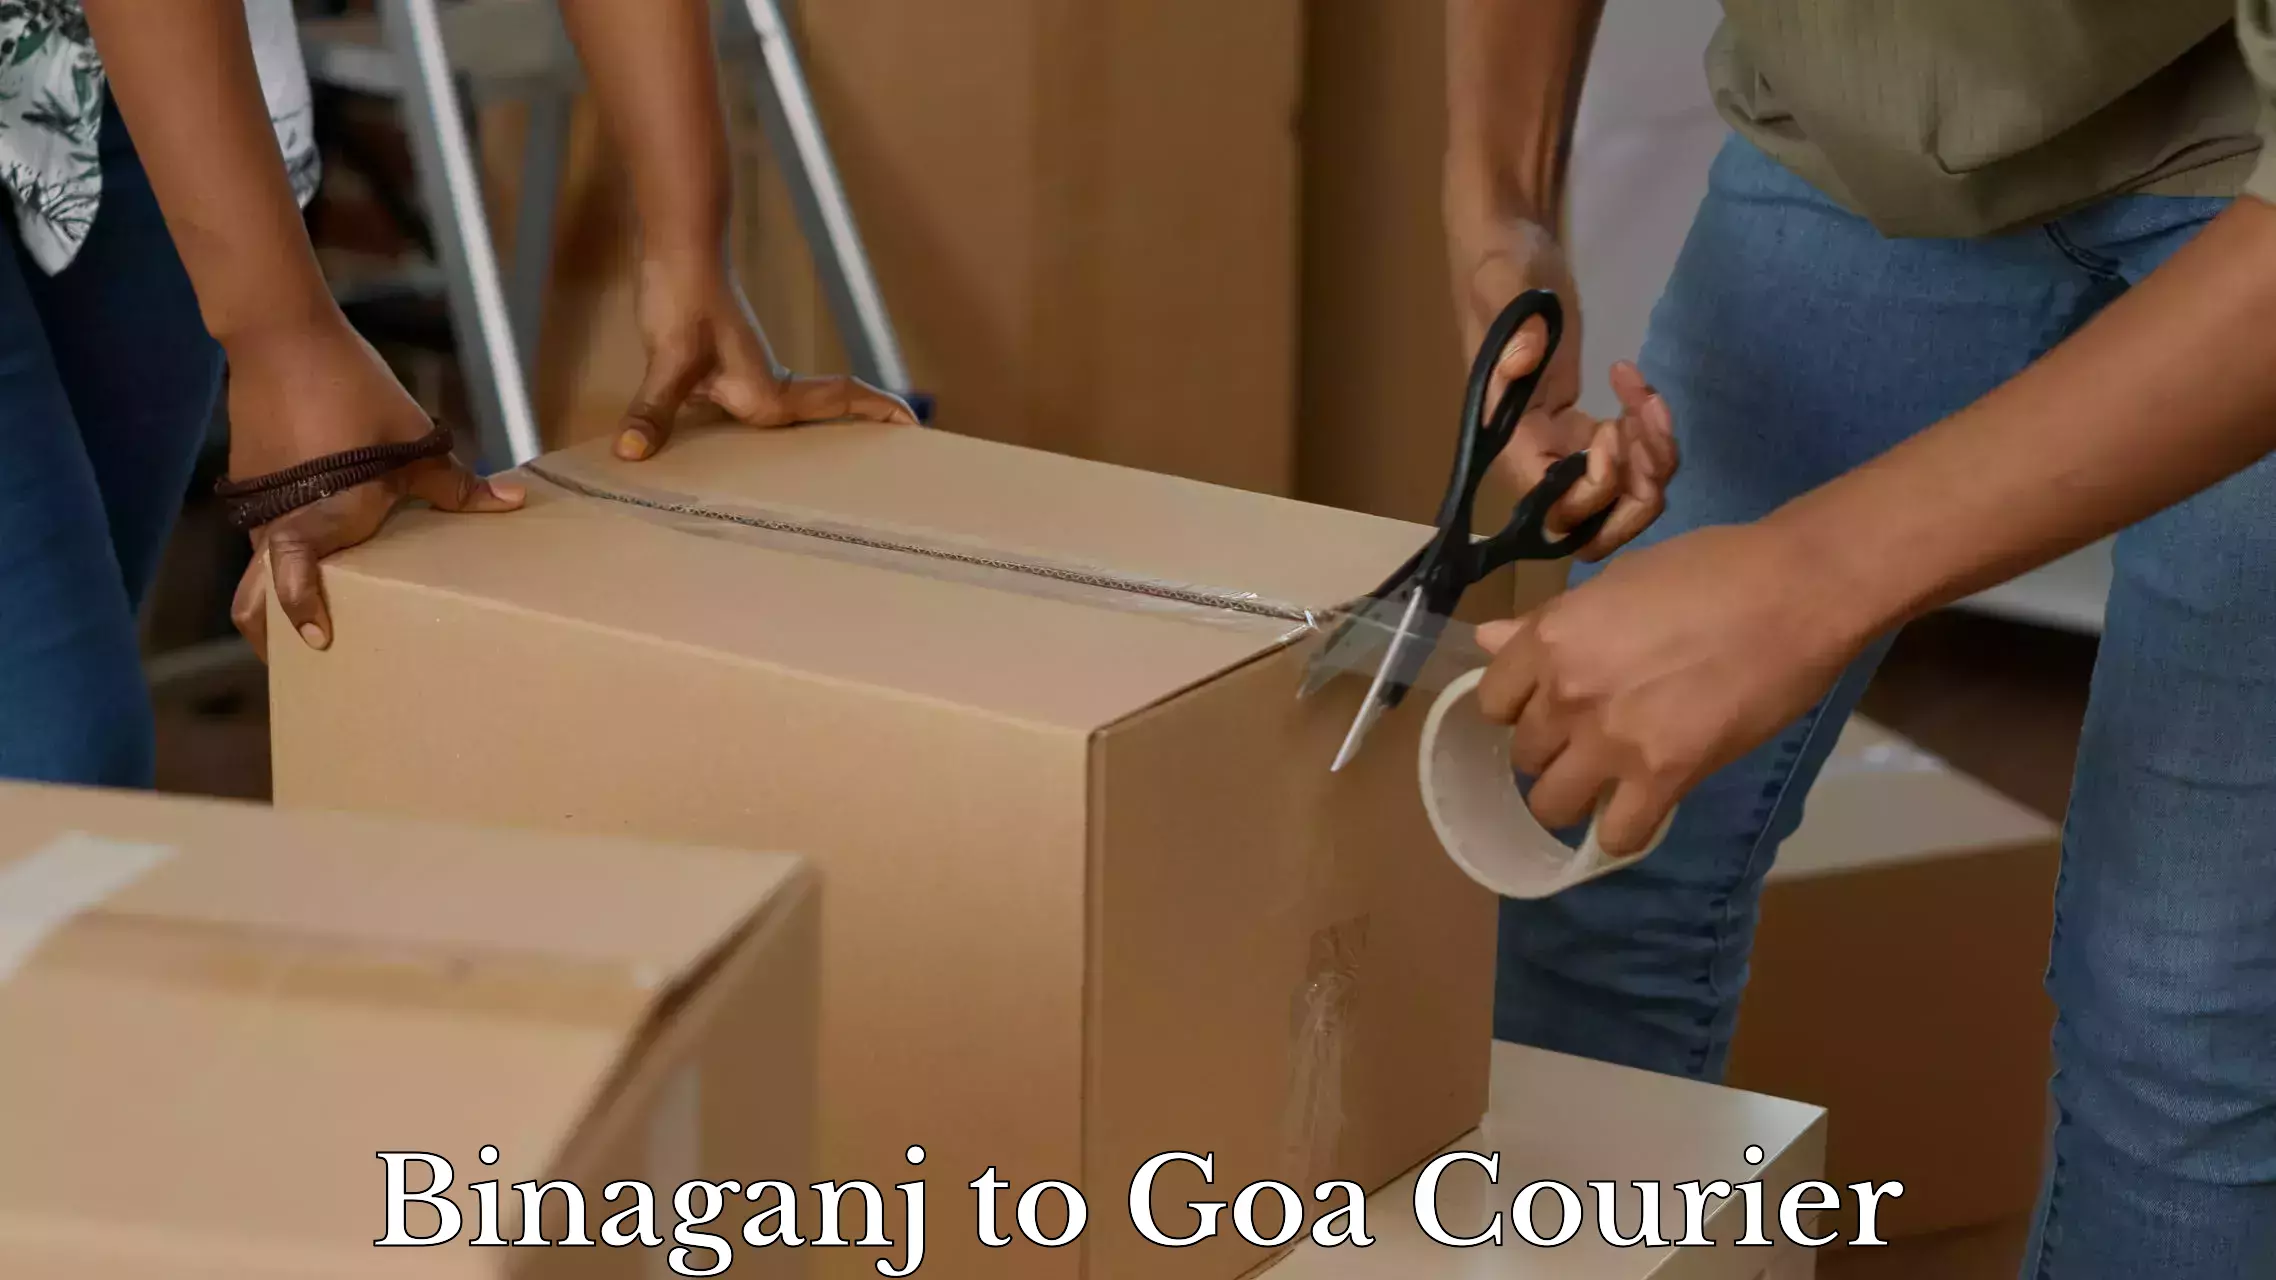 Baggage transport scheduler Binaganj to NIT Goa